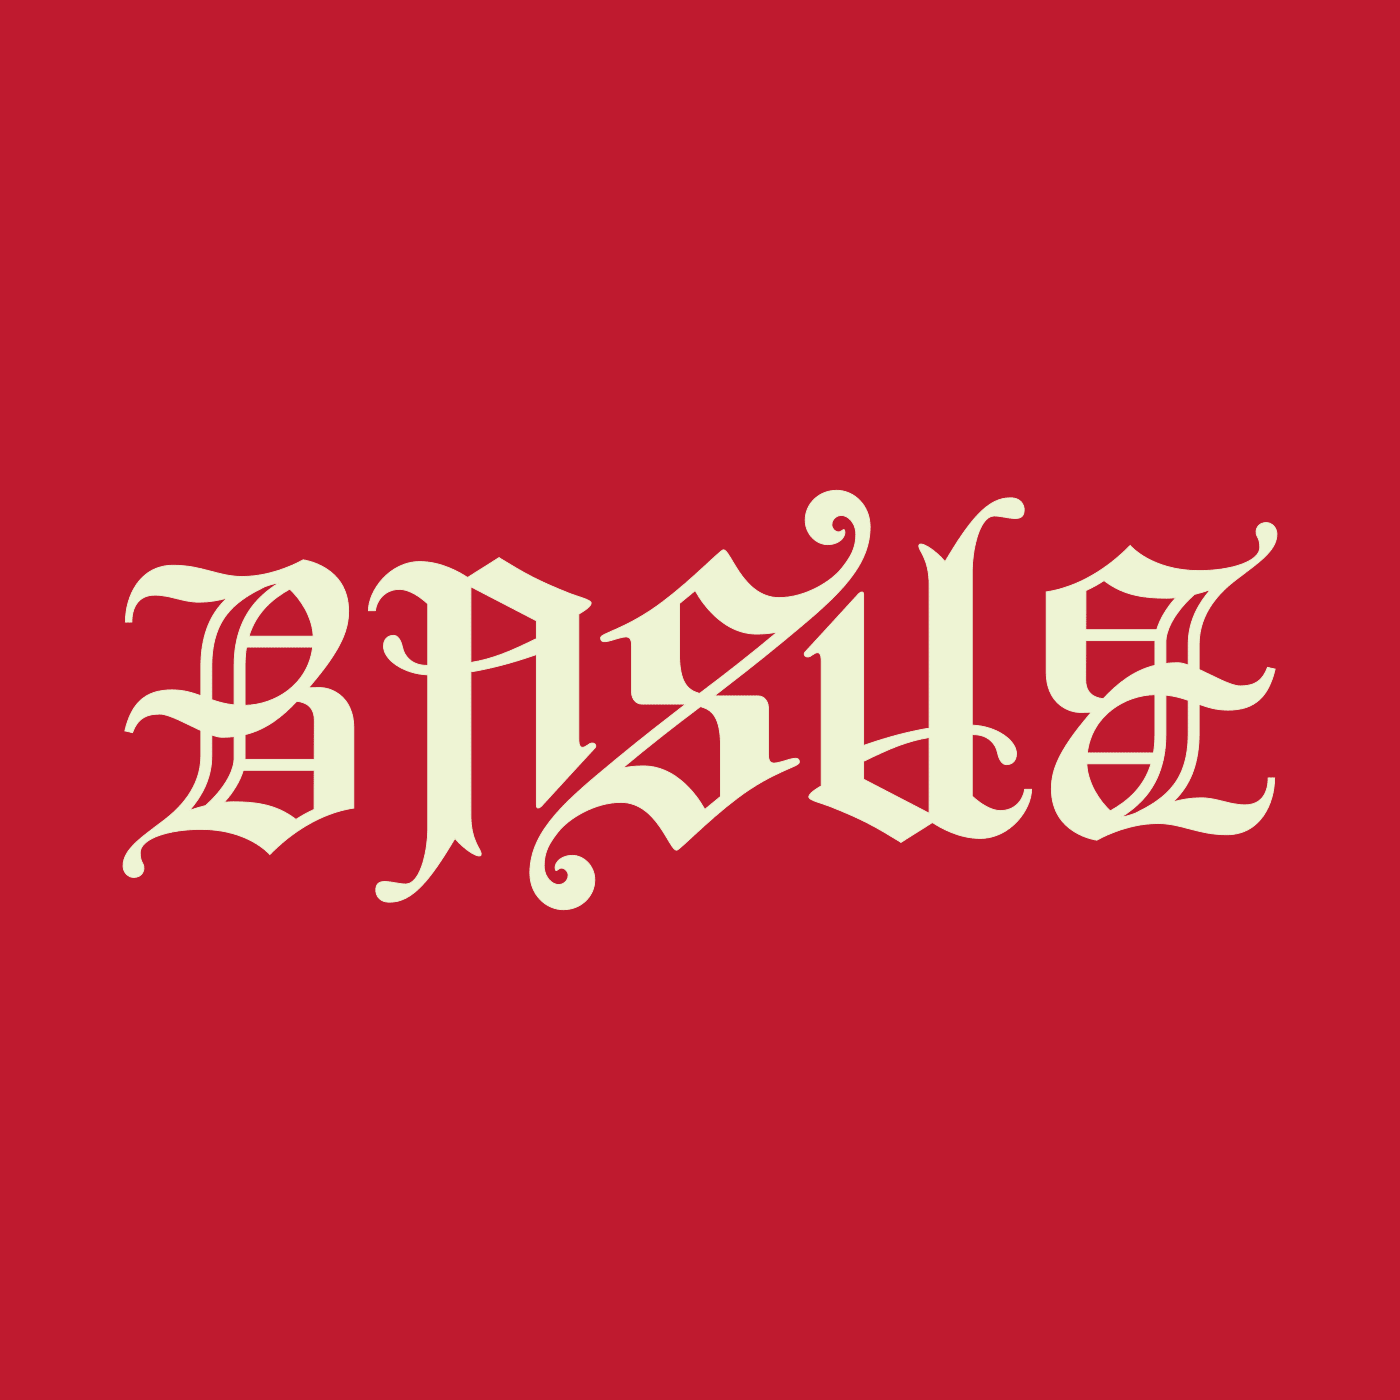 ambigramme Basile rouge